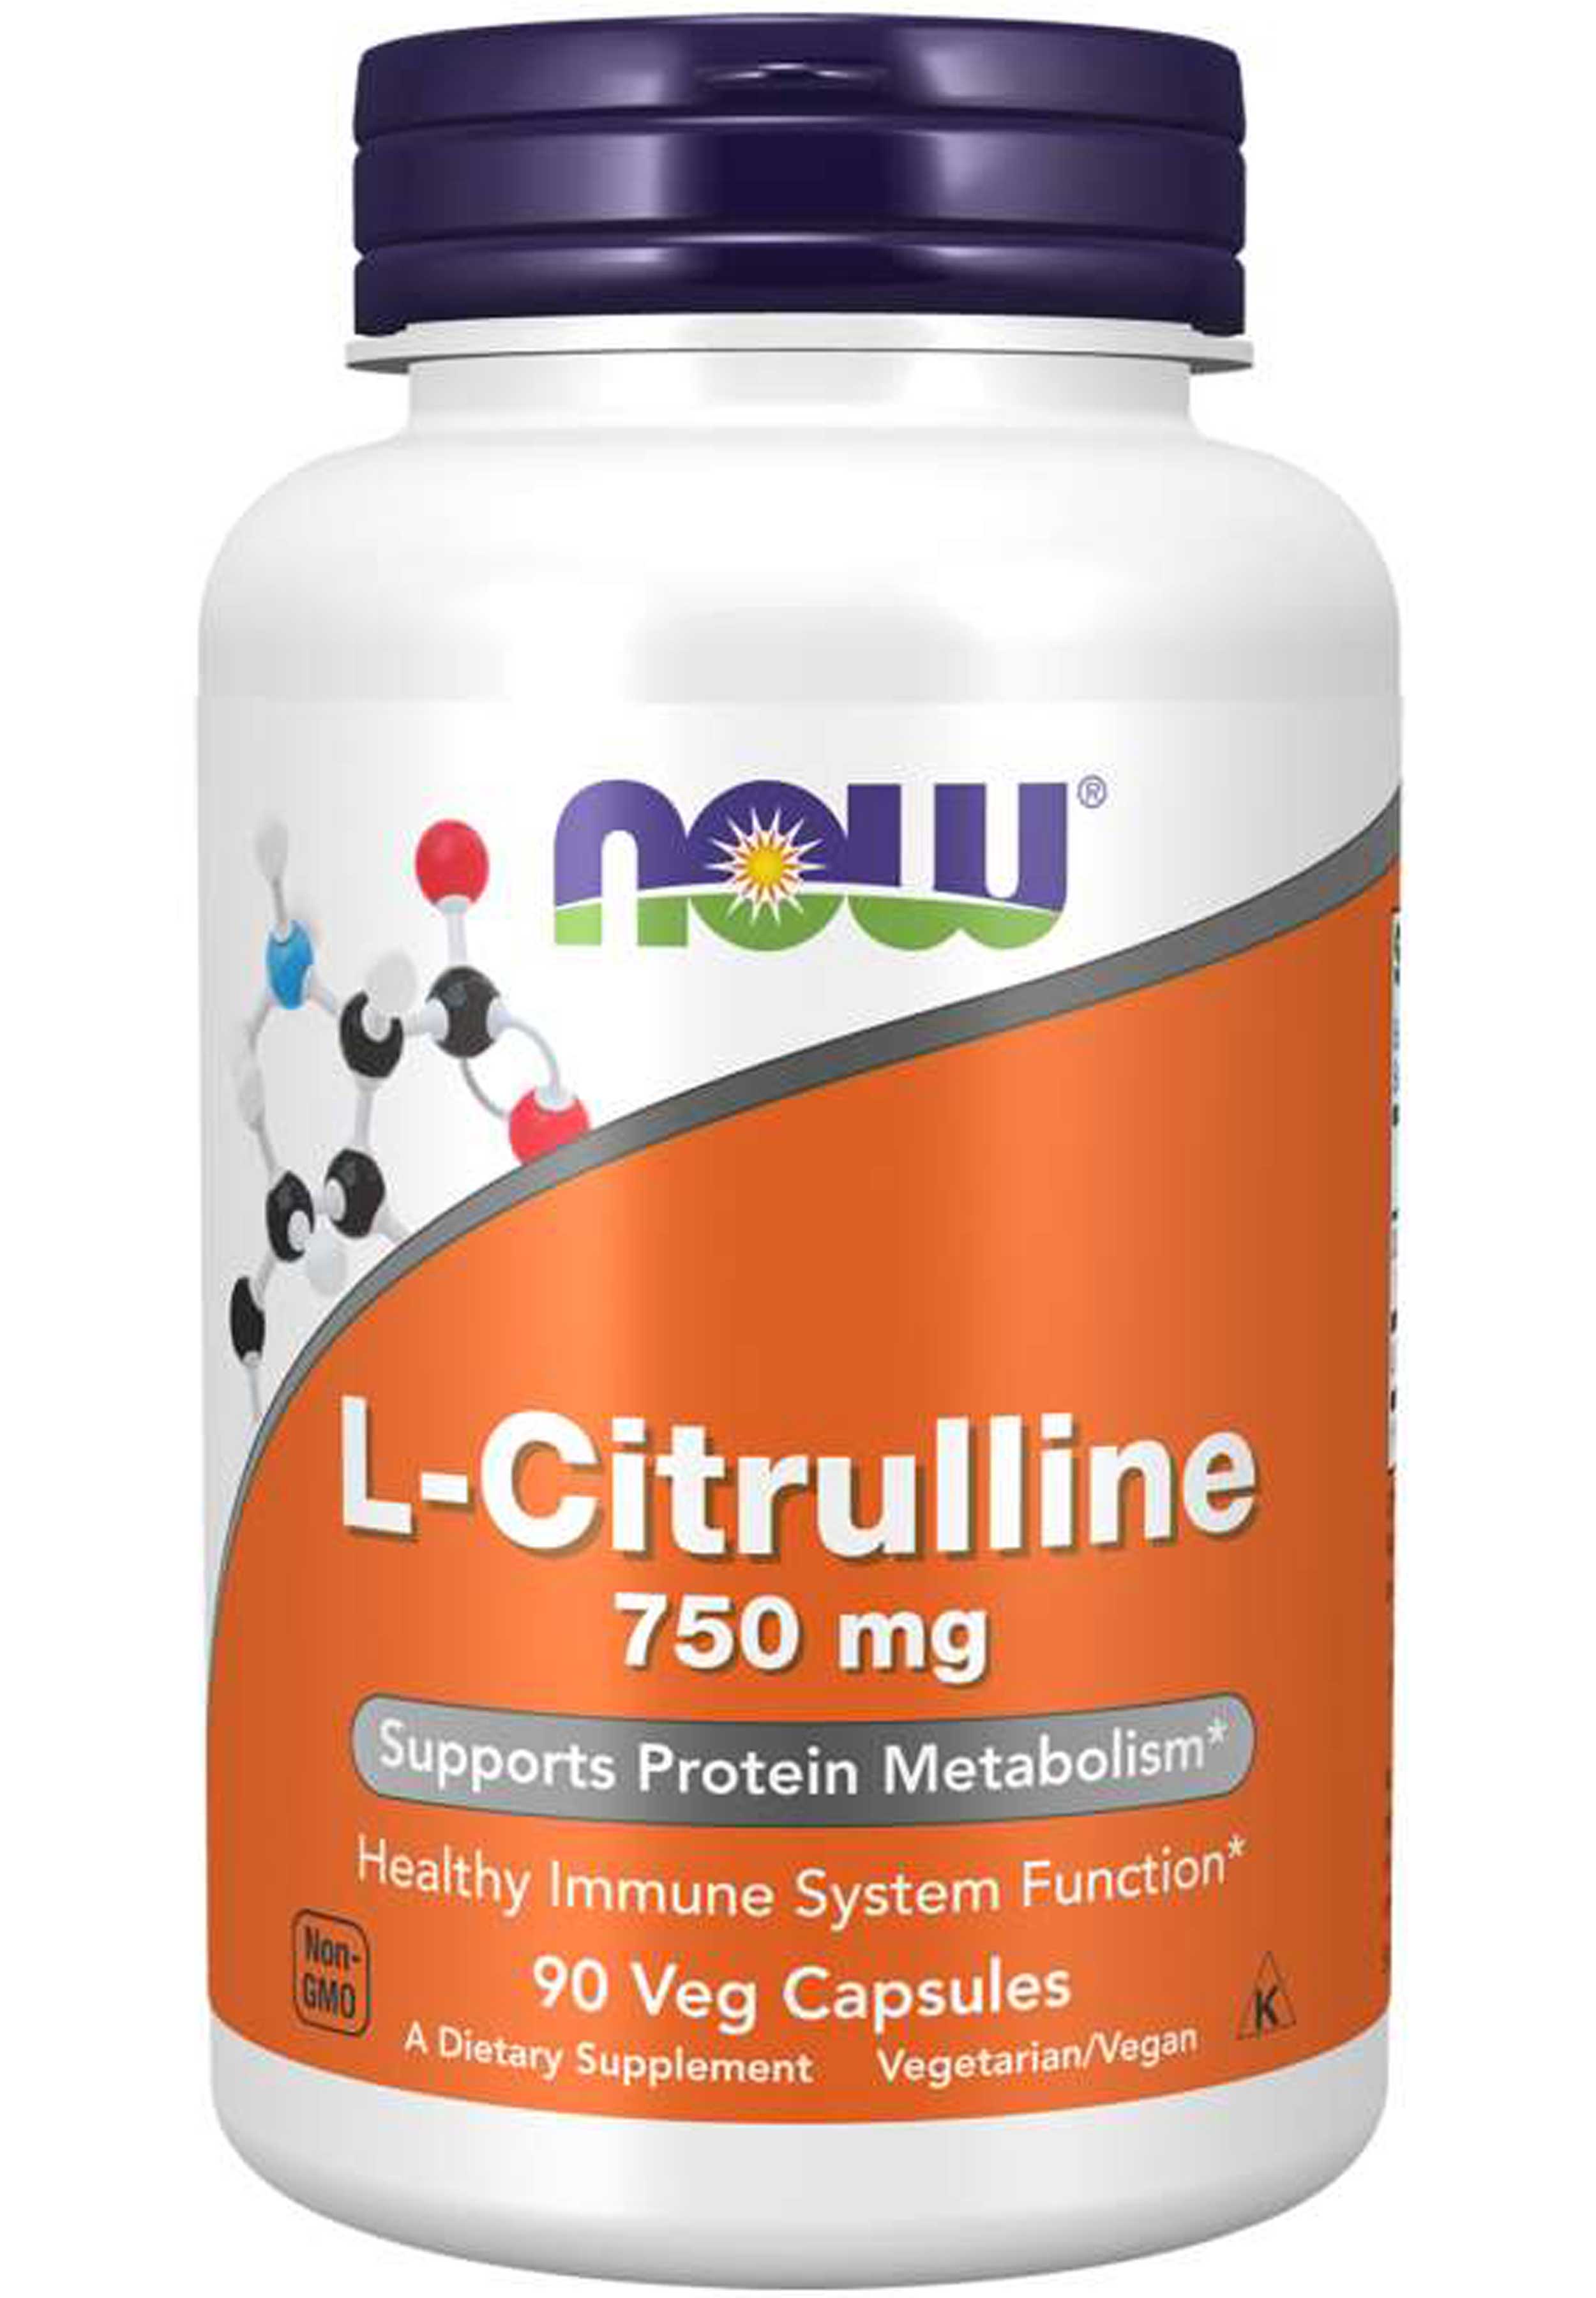 NOW L-Citrulline